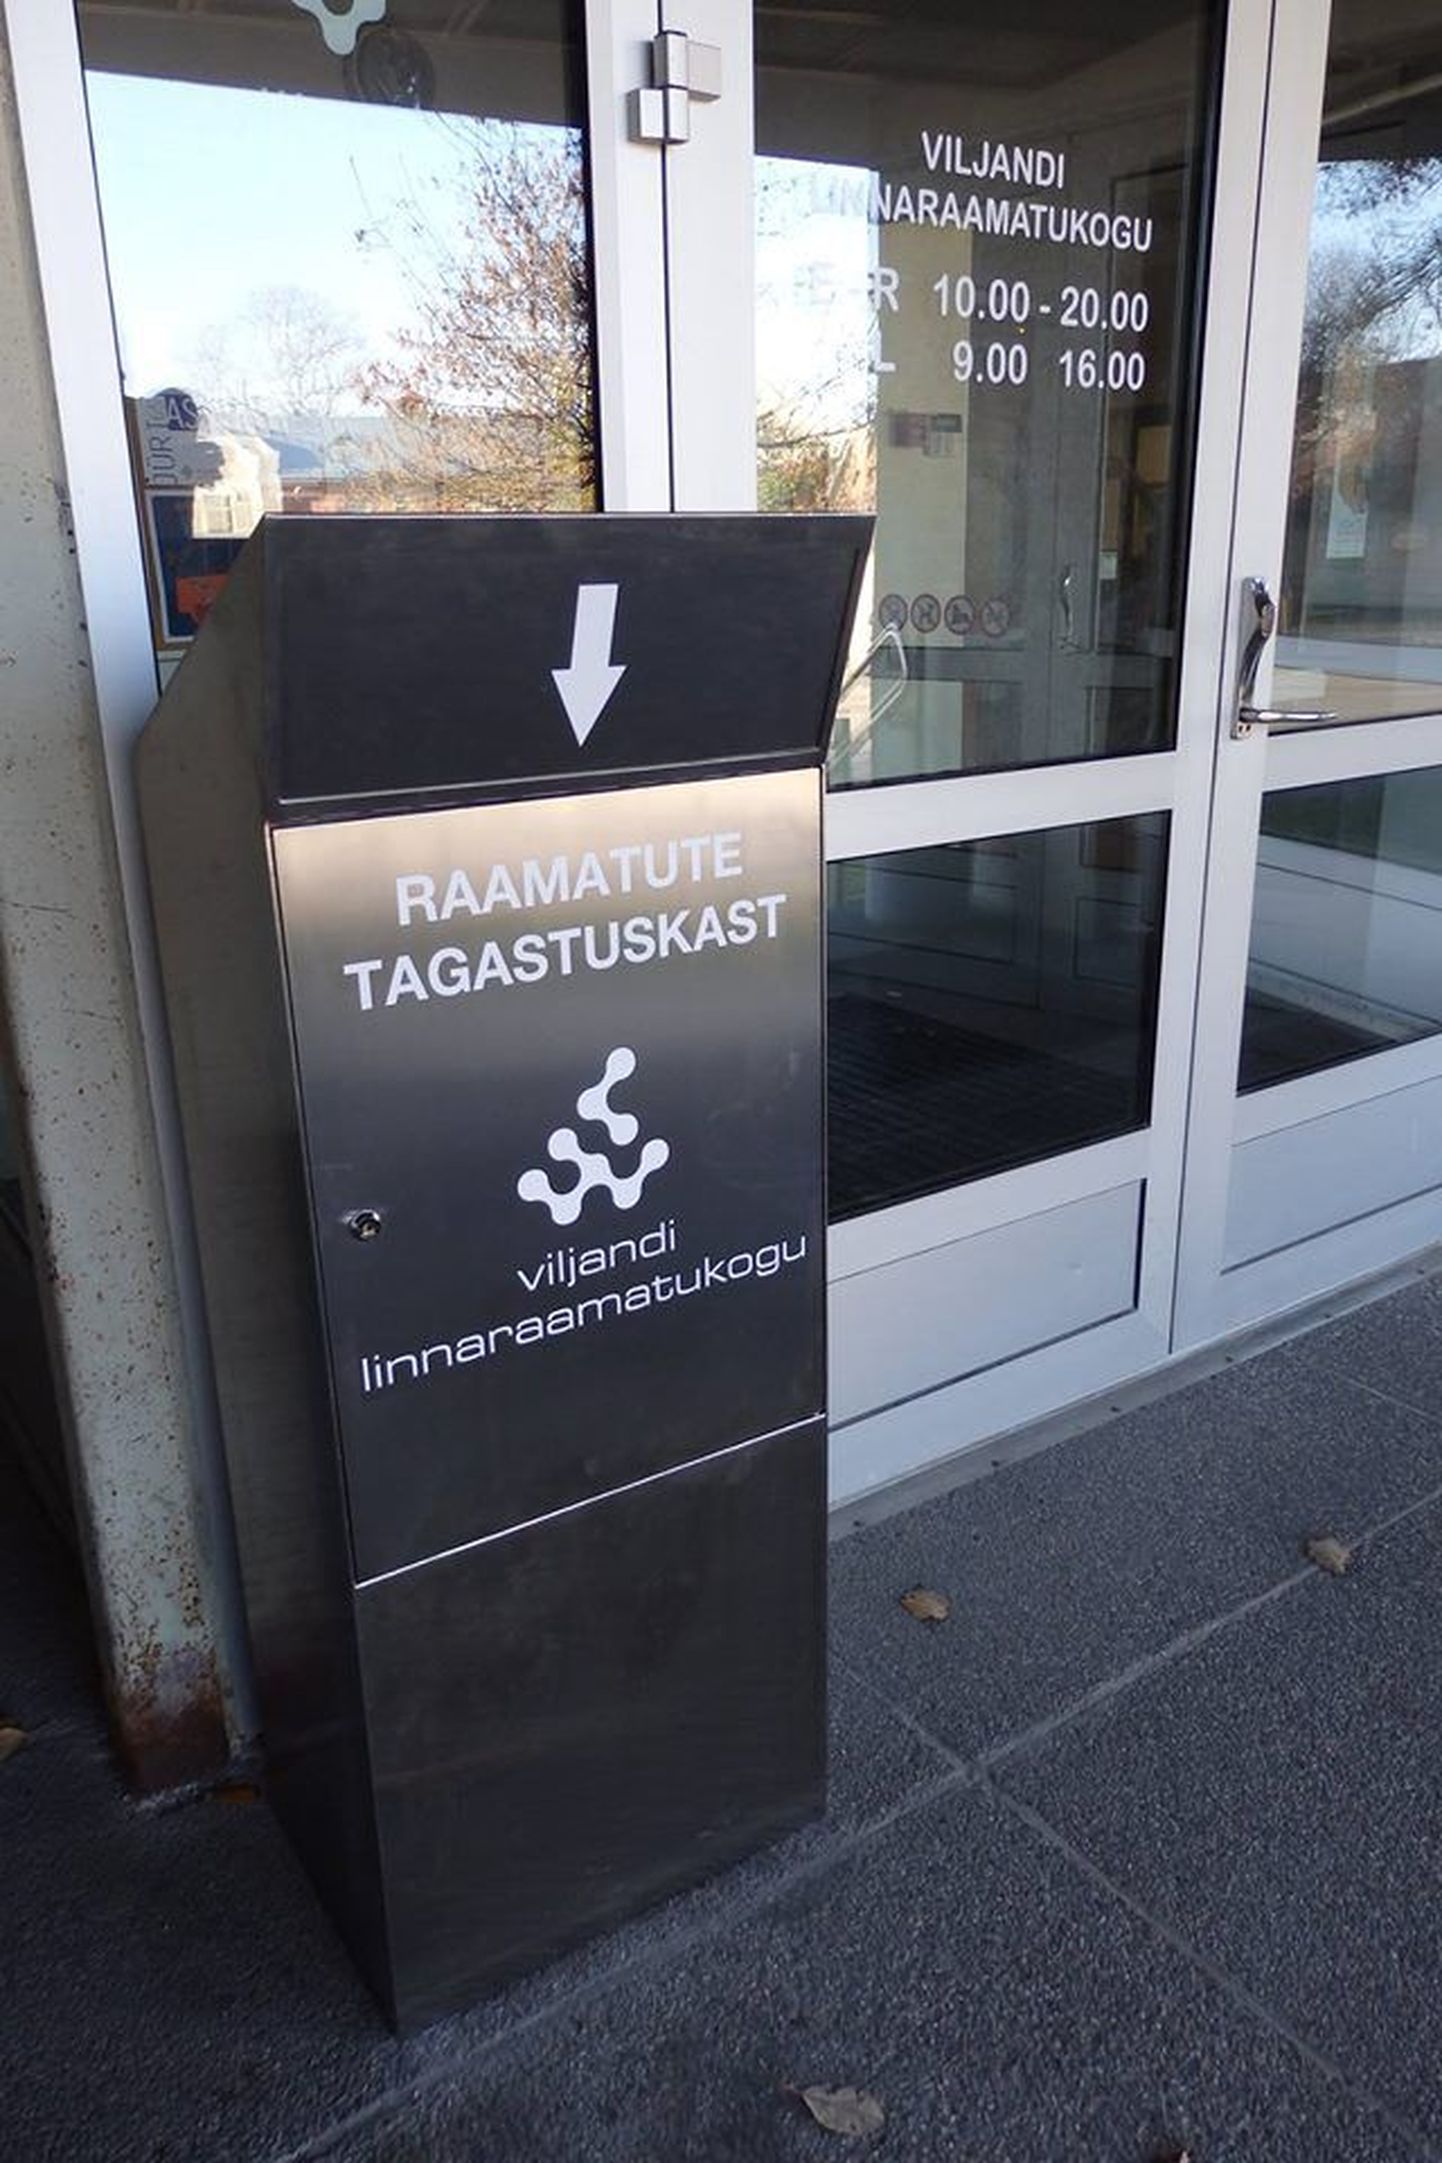 Tagastuskast ootab raamatuid Viljandi linnaraamatukogu peasissekäigu kõrval.